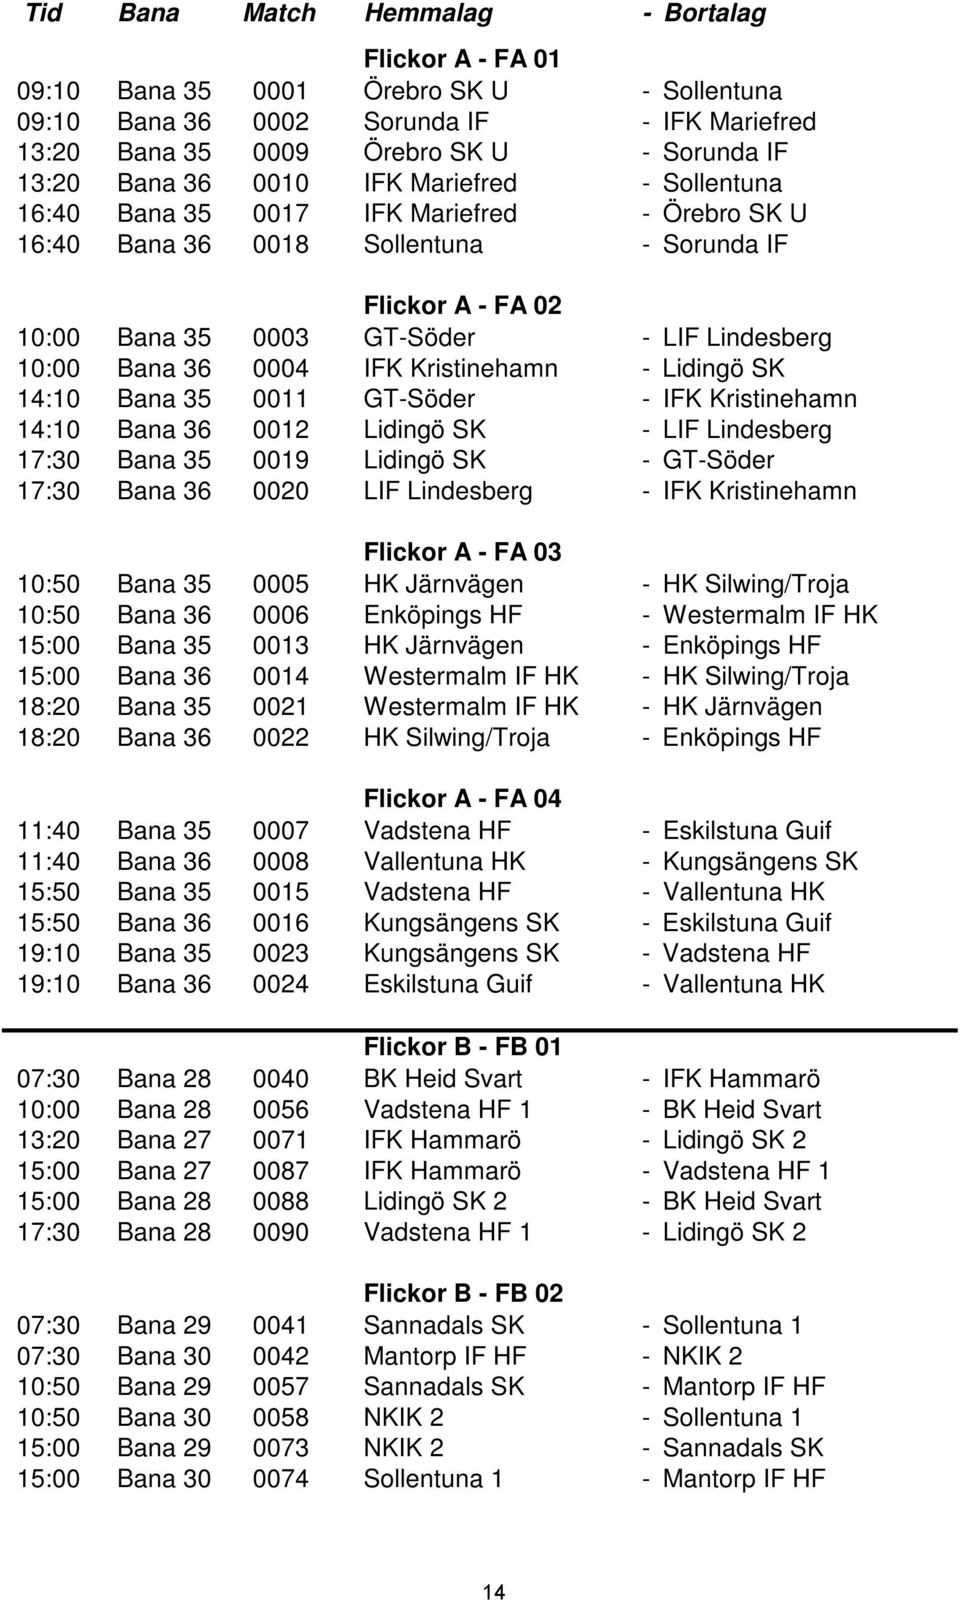 36 0004 IFK Kristinehamn - Lidingö SK 14:10 Bana 35 0011 GT-Söder - IFK Kristinehamn 14:10 Bana 36 0012 Lidingö SK - LIF Lindesberg 17:30 Bana 35 0019 Lidingö SK - GT-Söder 17:30 Bana 36 0020 LIF